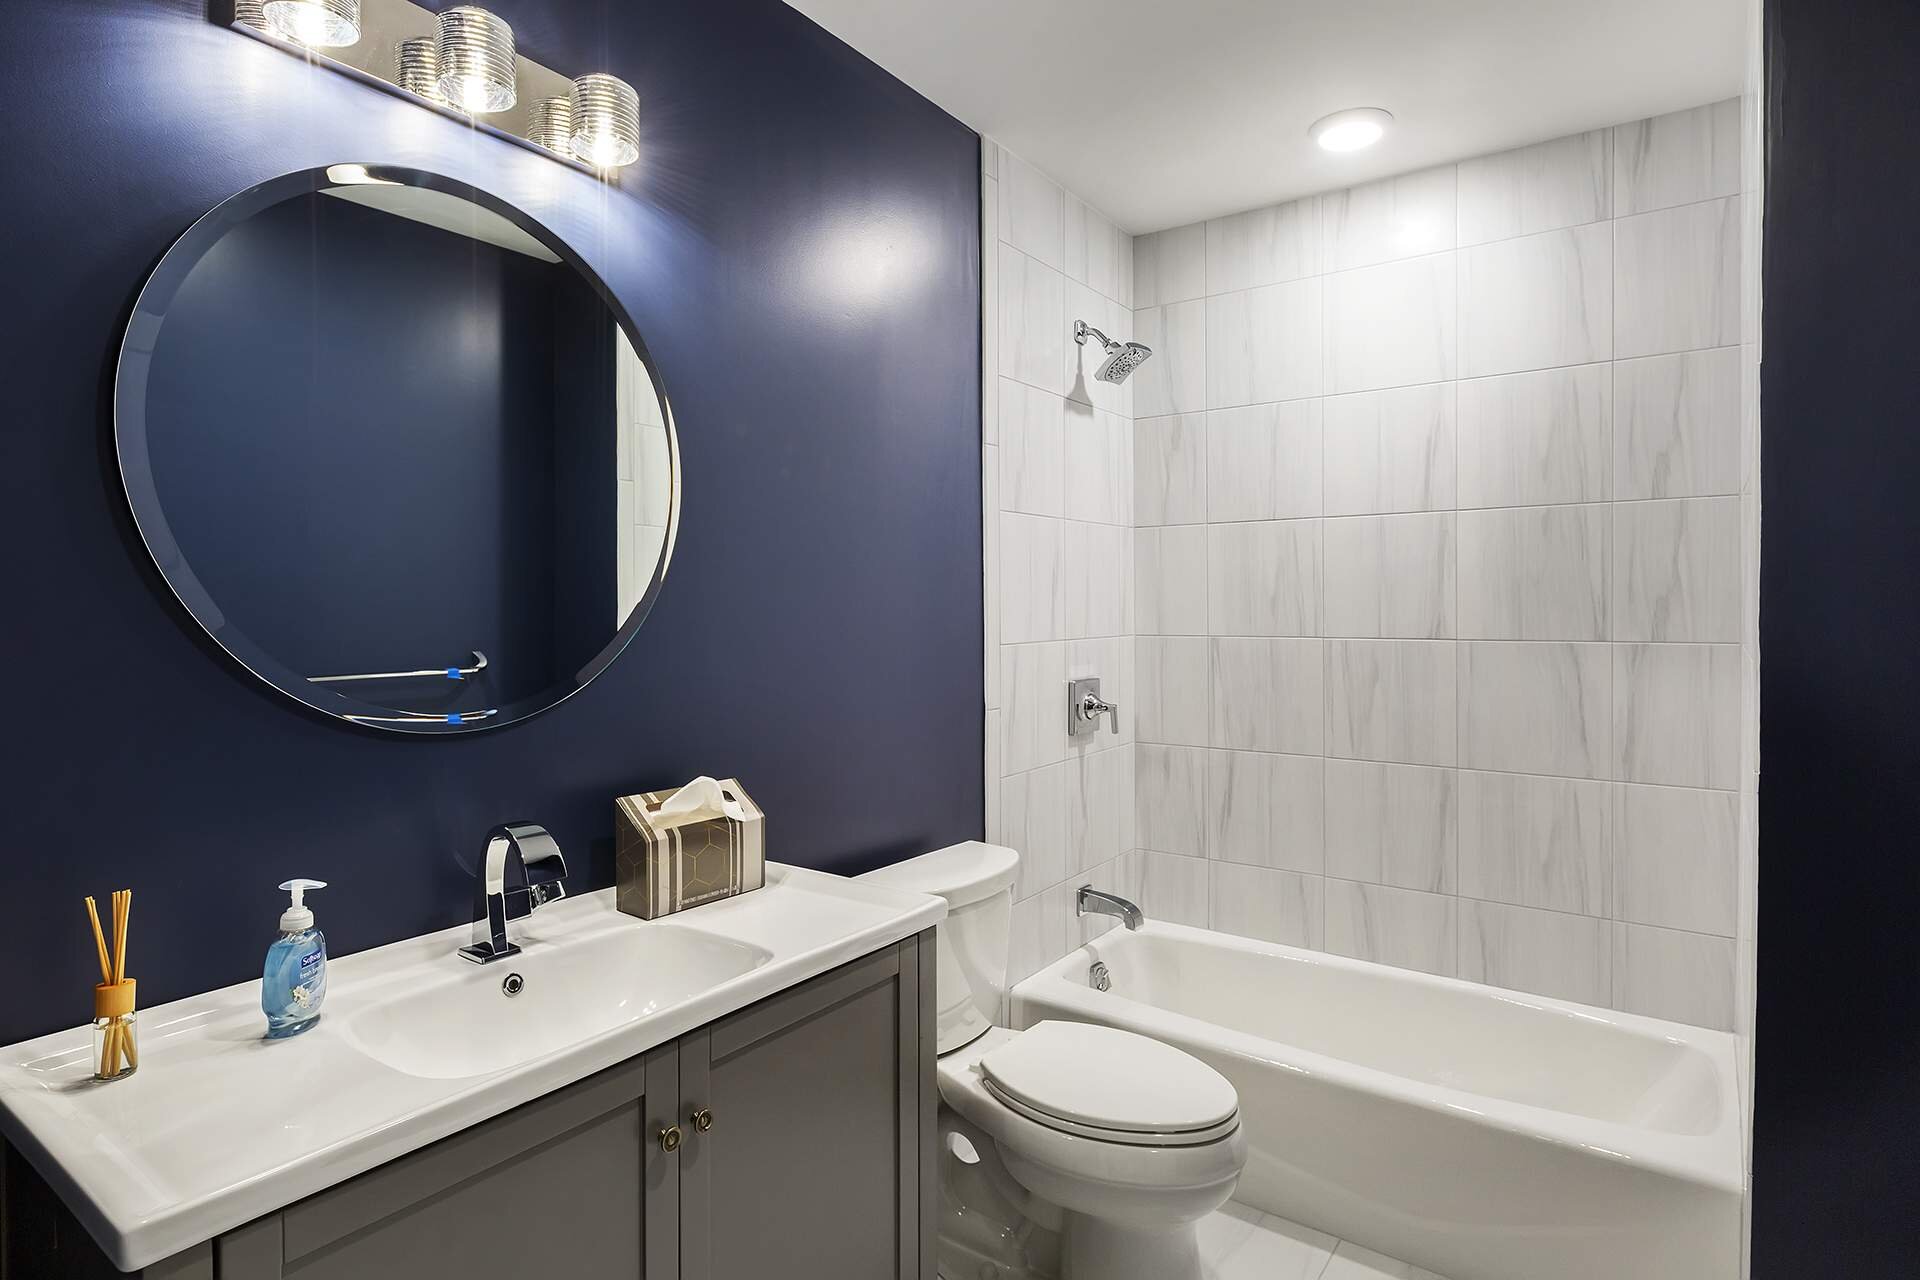 CNFT Properties Bathroom Design